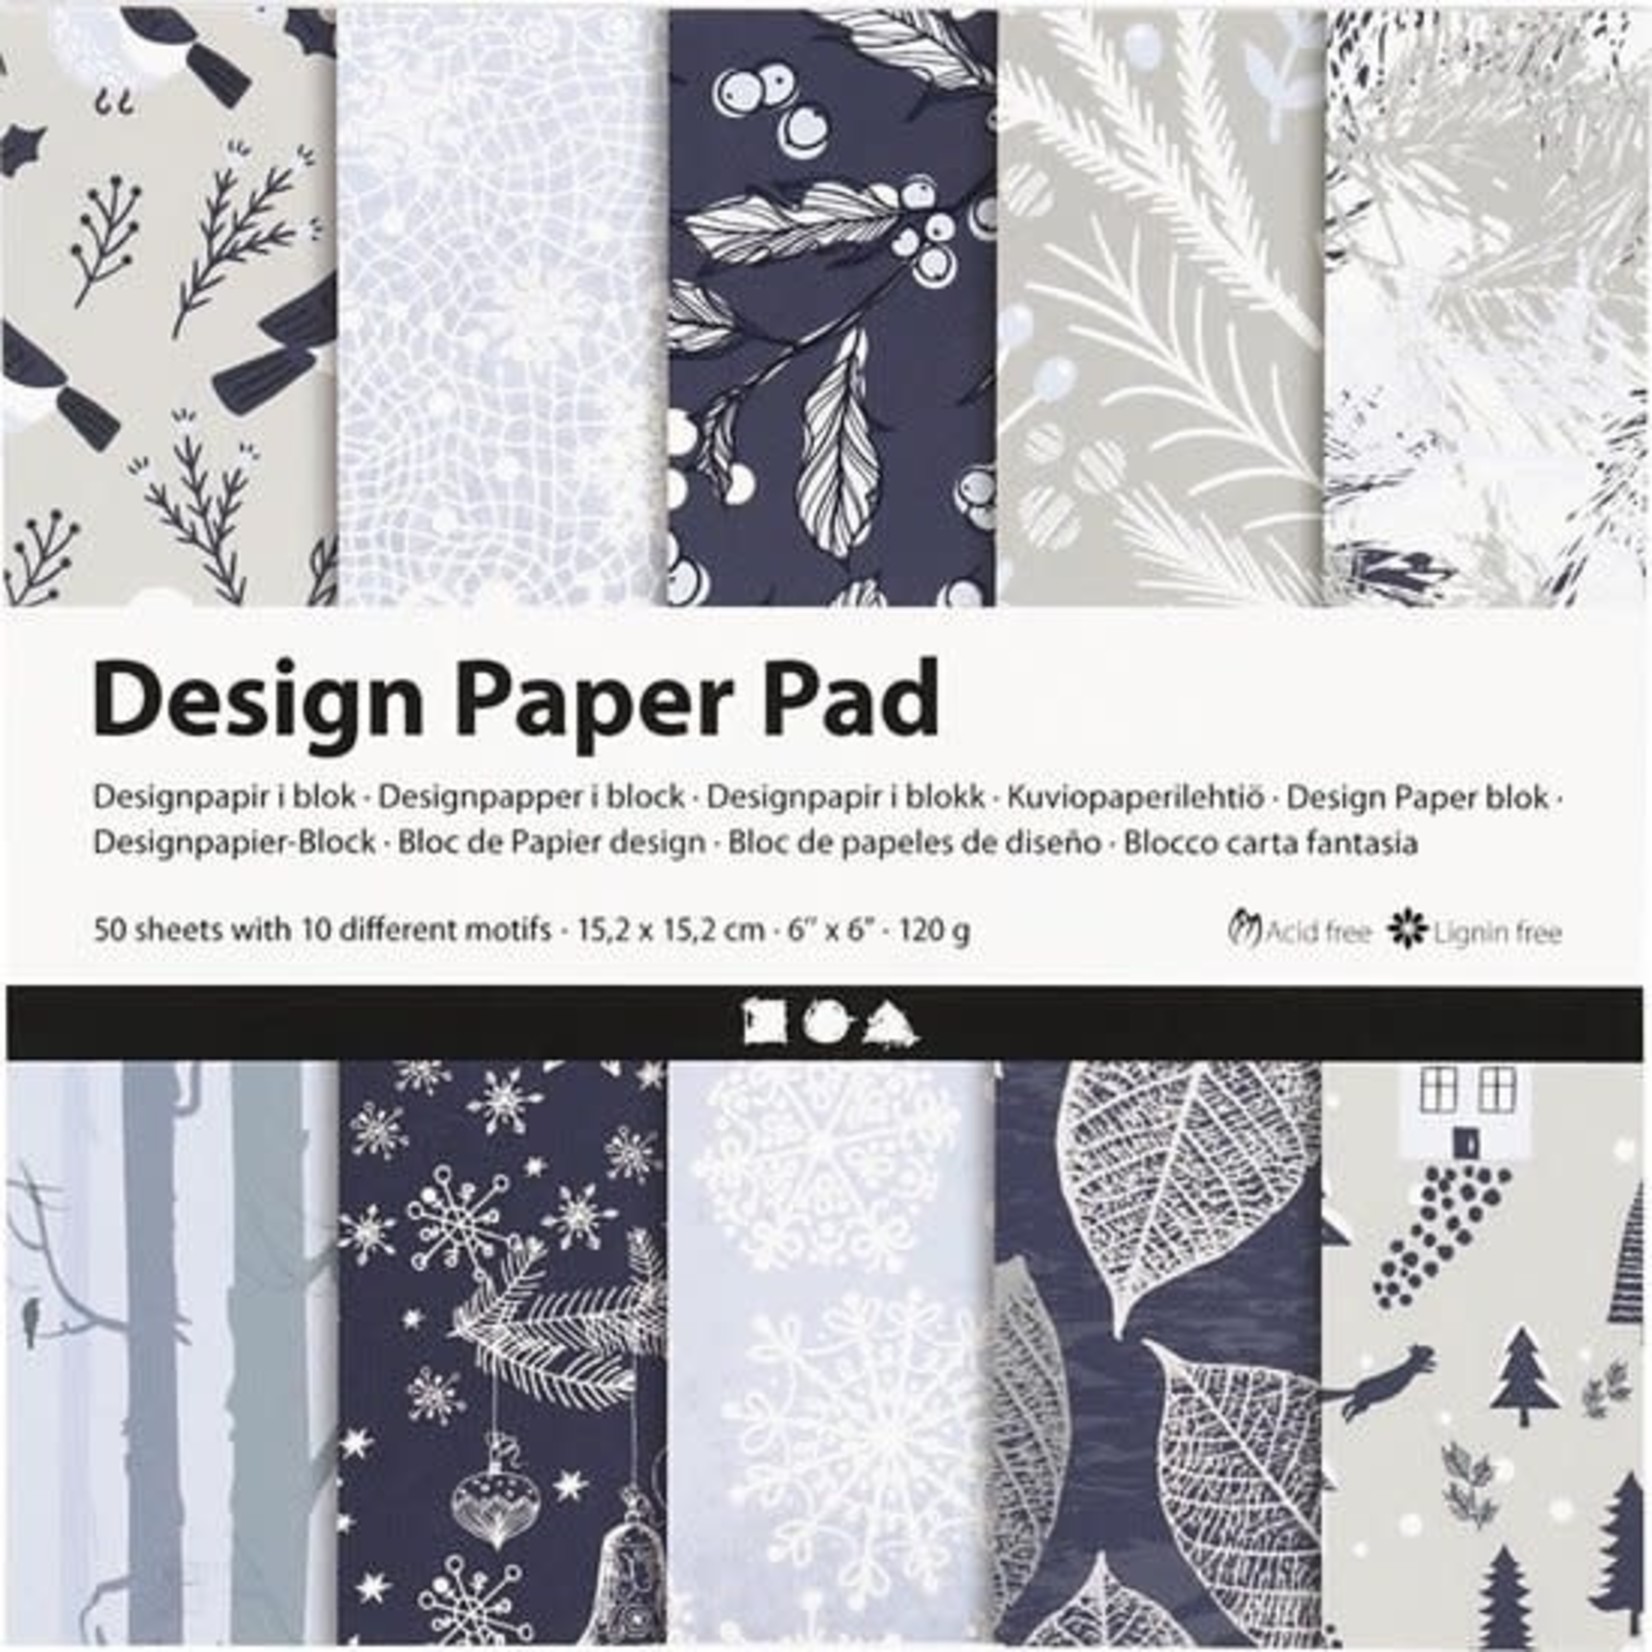 Creotime Design Paper Pad - Bleu/Grey